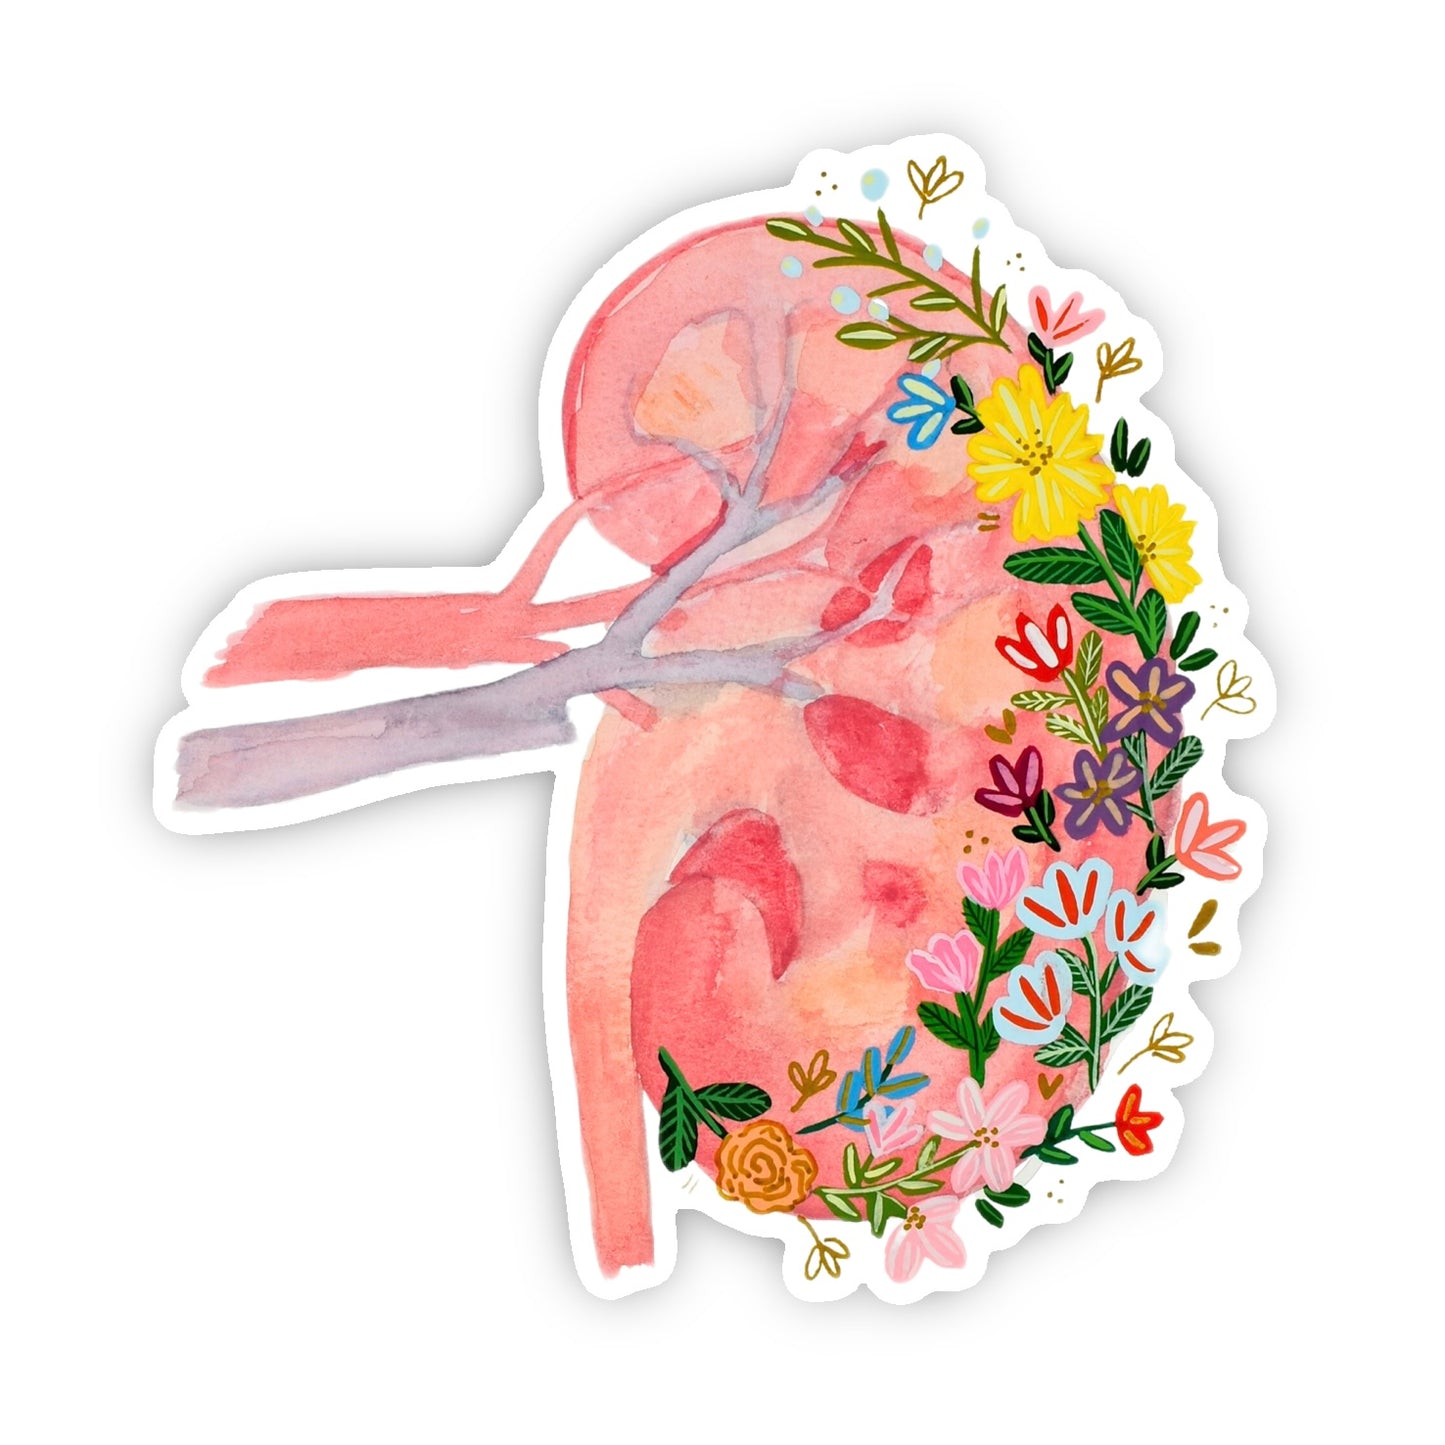 Kidney Medicine & Flowers Sticker